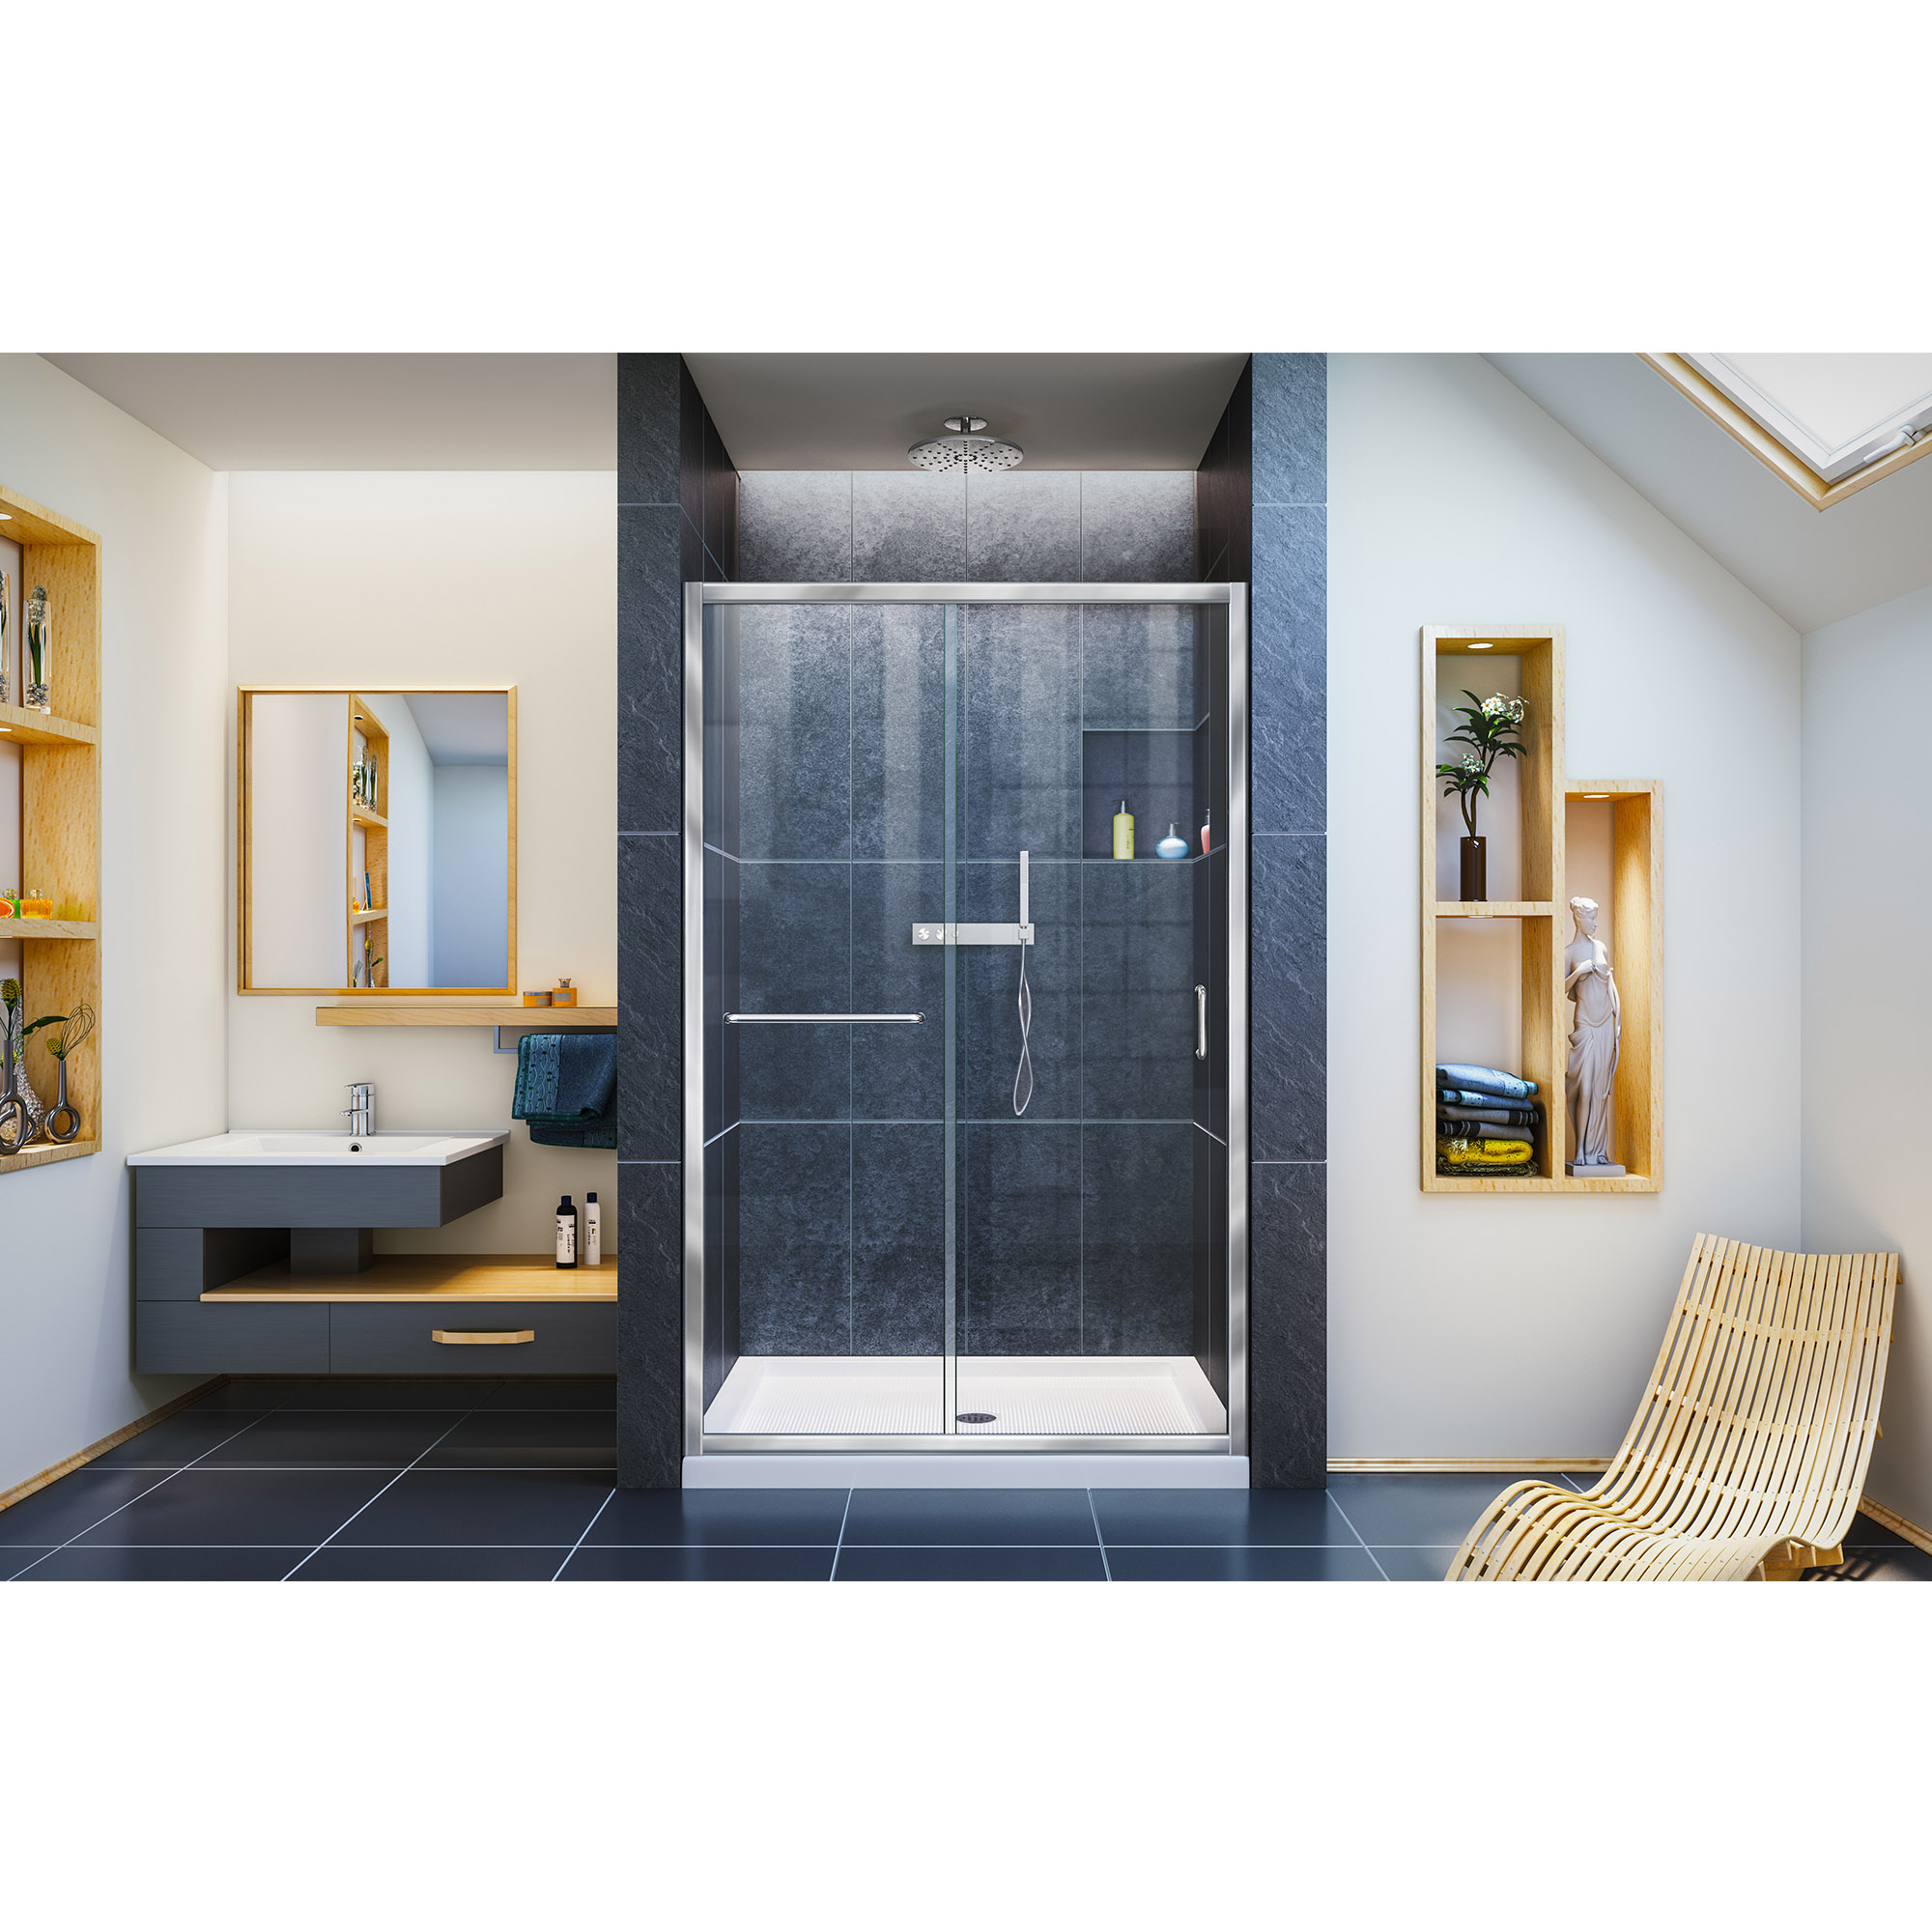 Dreamline Infinity Z 44 48 In W X 72 In H Semi Frameless Sliding Shower Door Clear Glass In